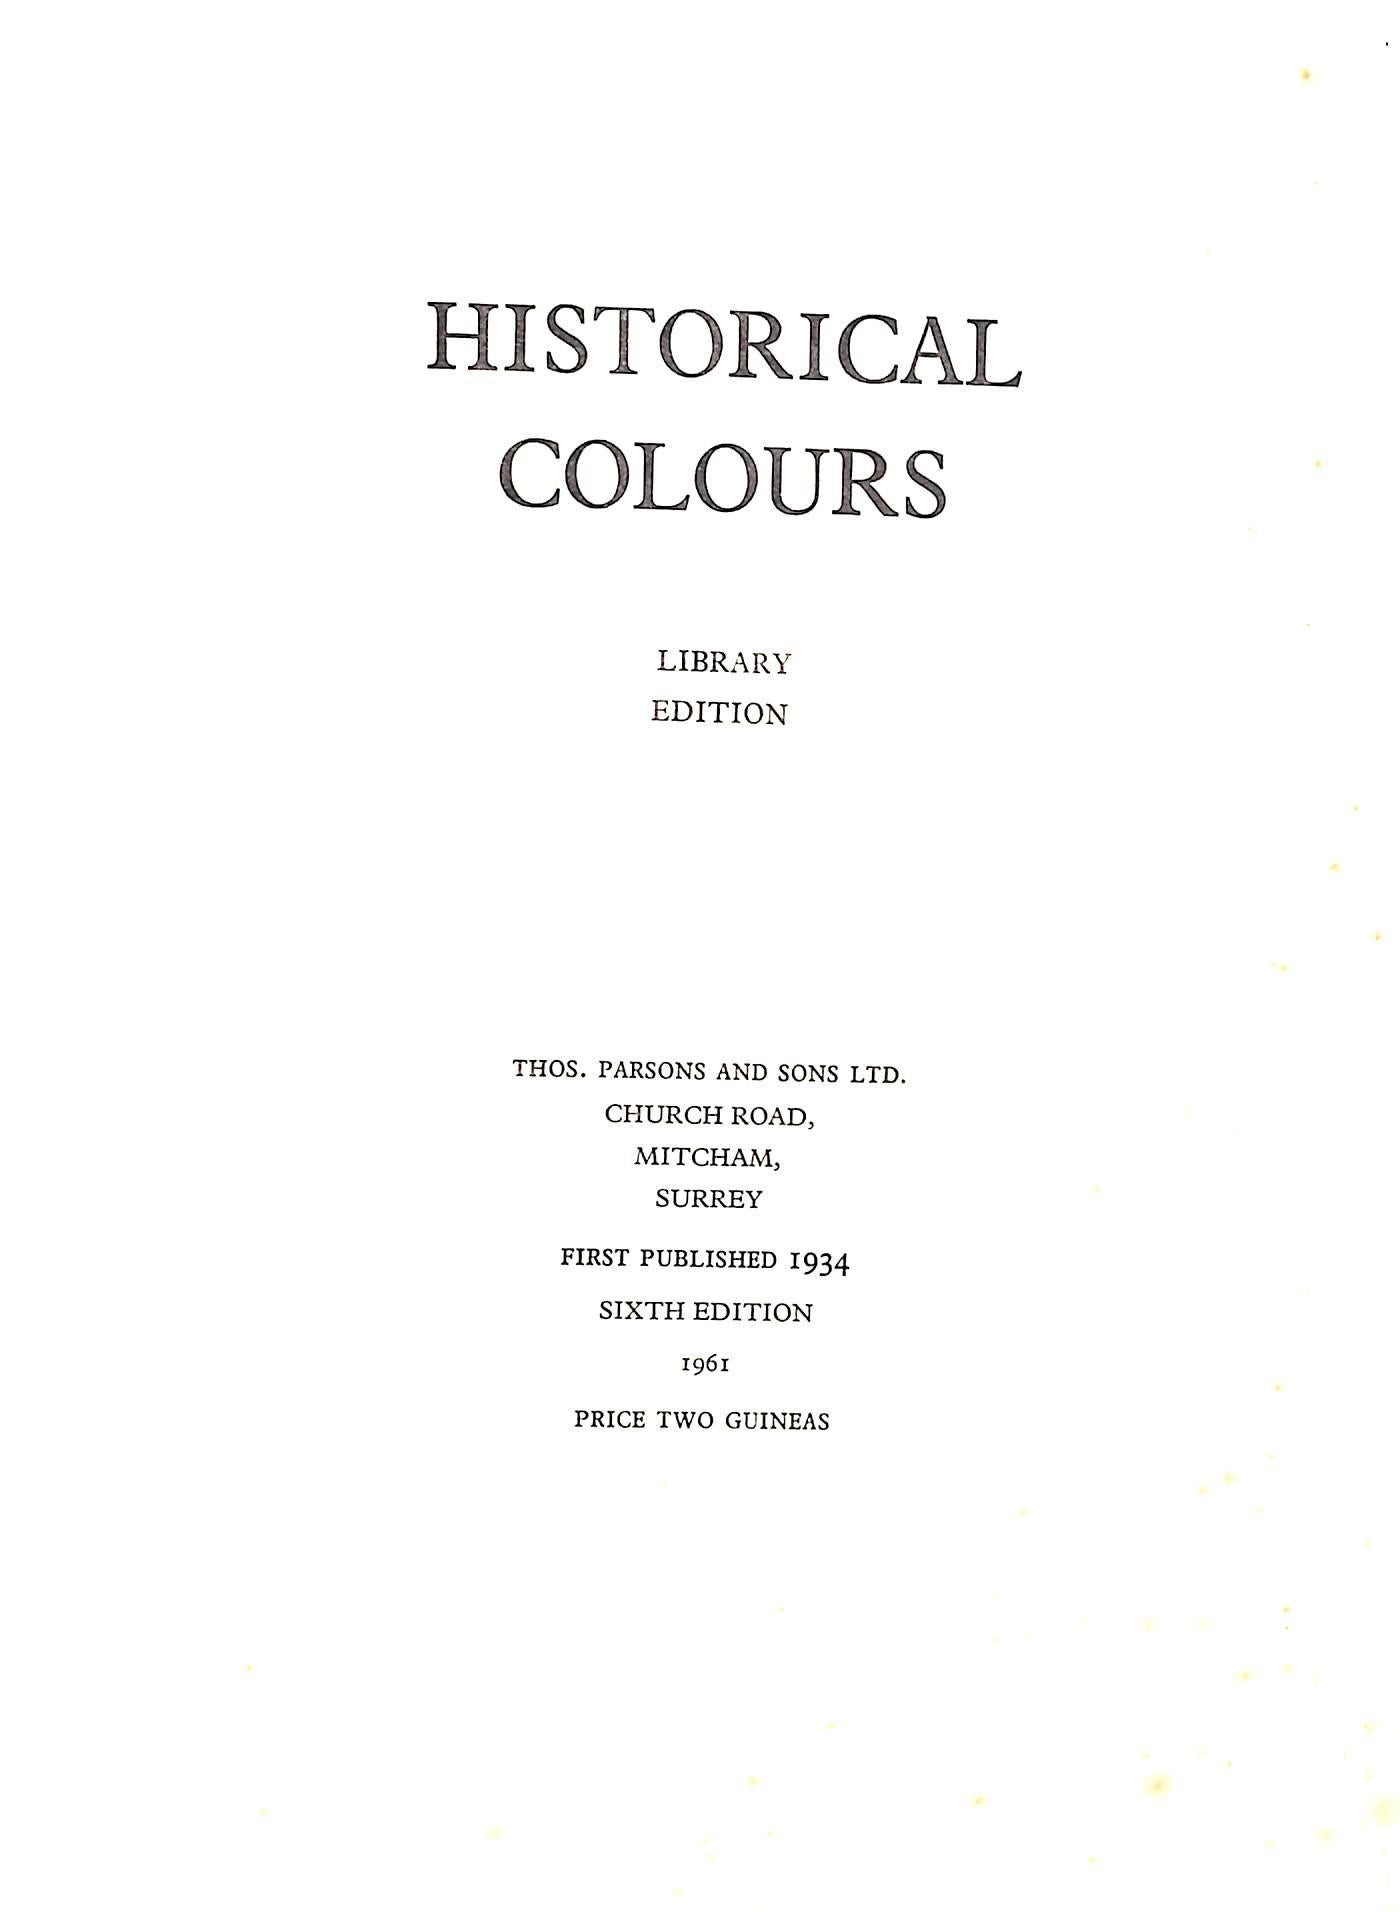 [73] pp.

Contient 136 échantillons de peinture collés et protégés par des gardes de tissus.

Thos. Parsons & Sons Ltd.

1961

Sixième édition

Édition de la bibliothèque

9 1/2